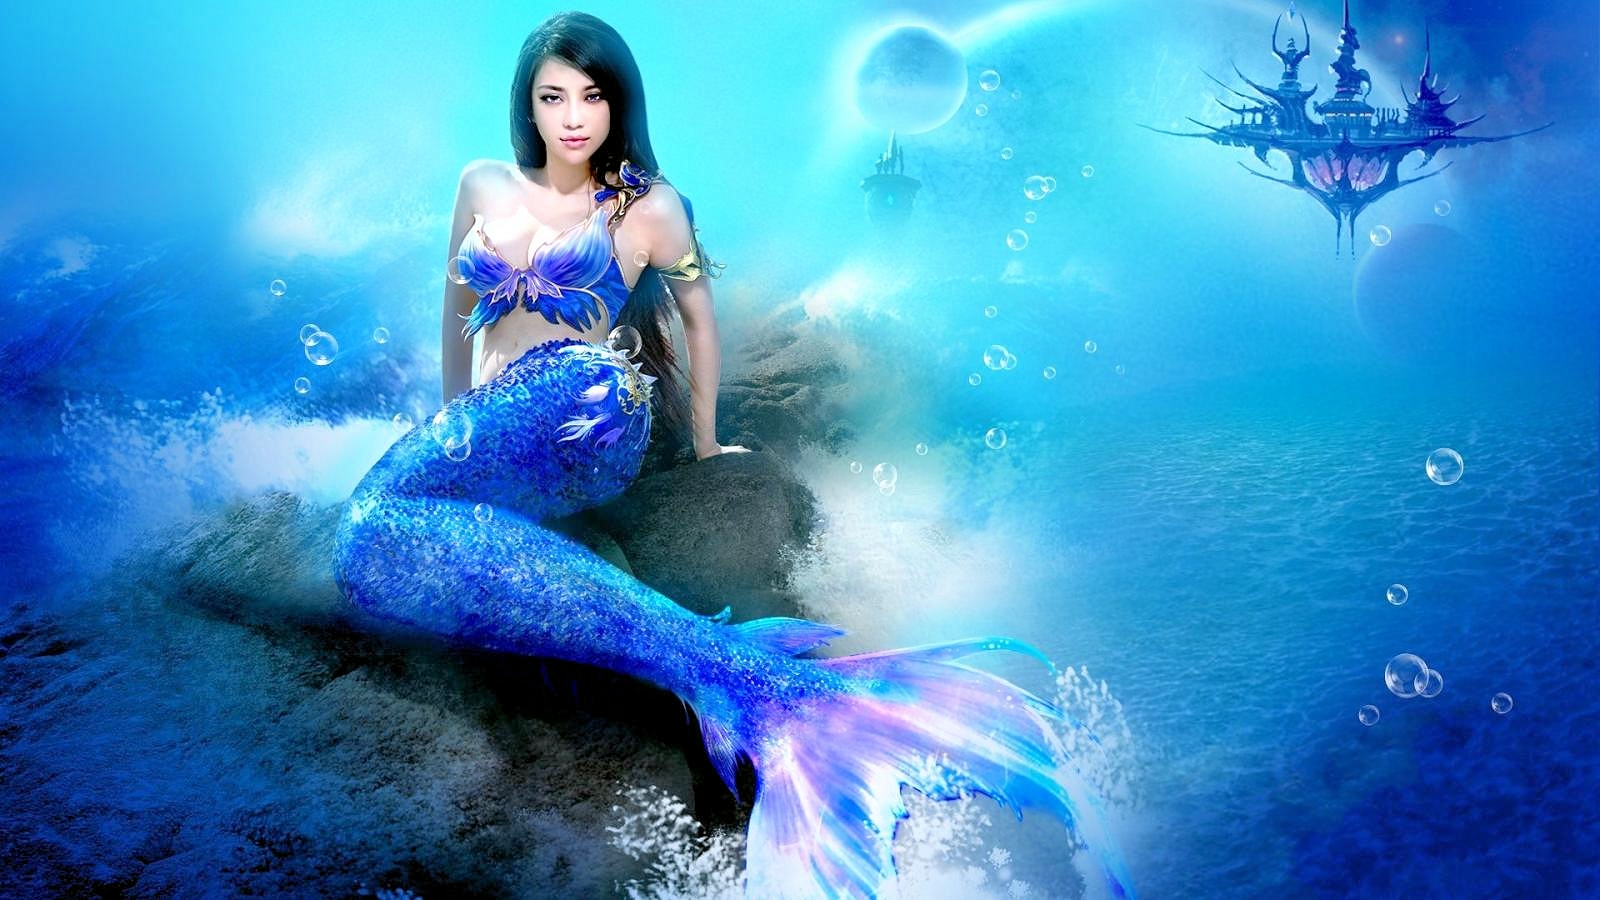 Blue Mermaid Mermaids Wallpaper